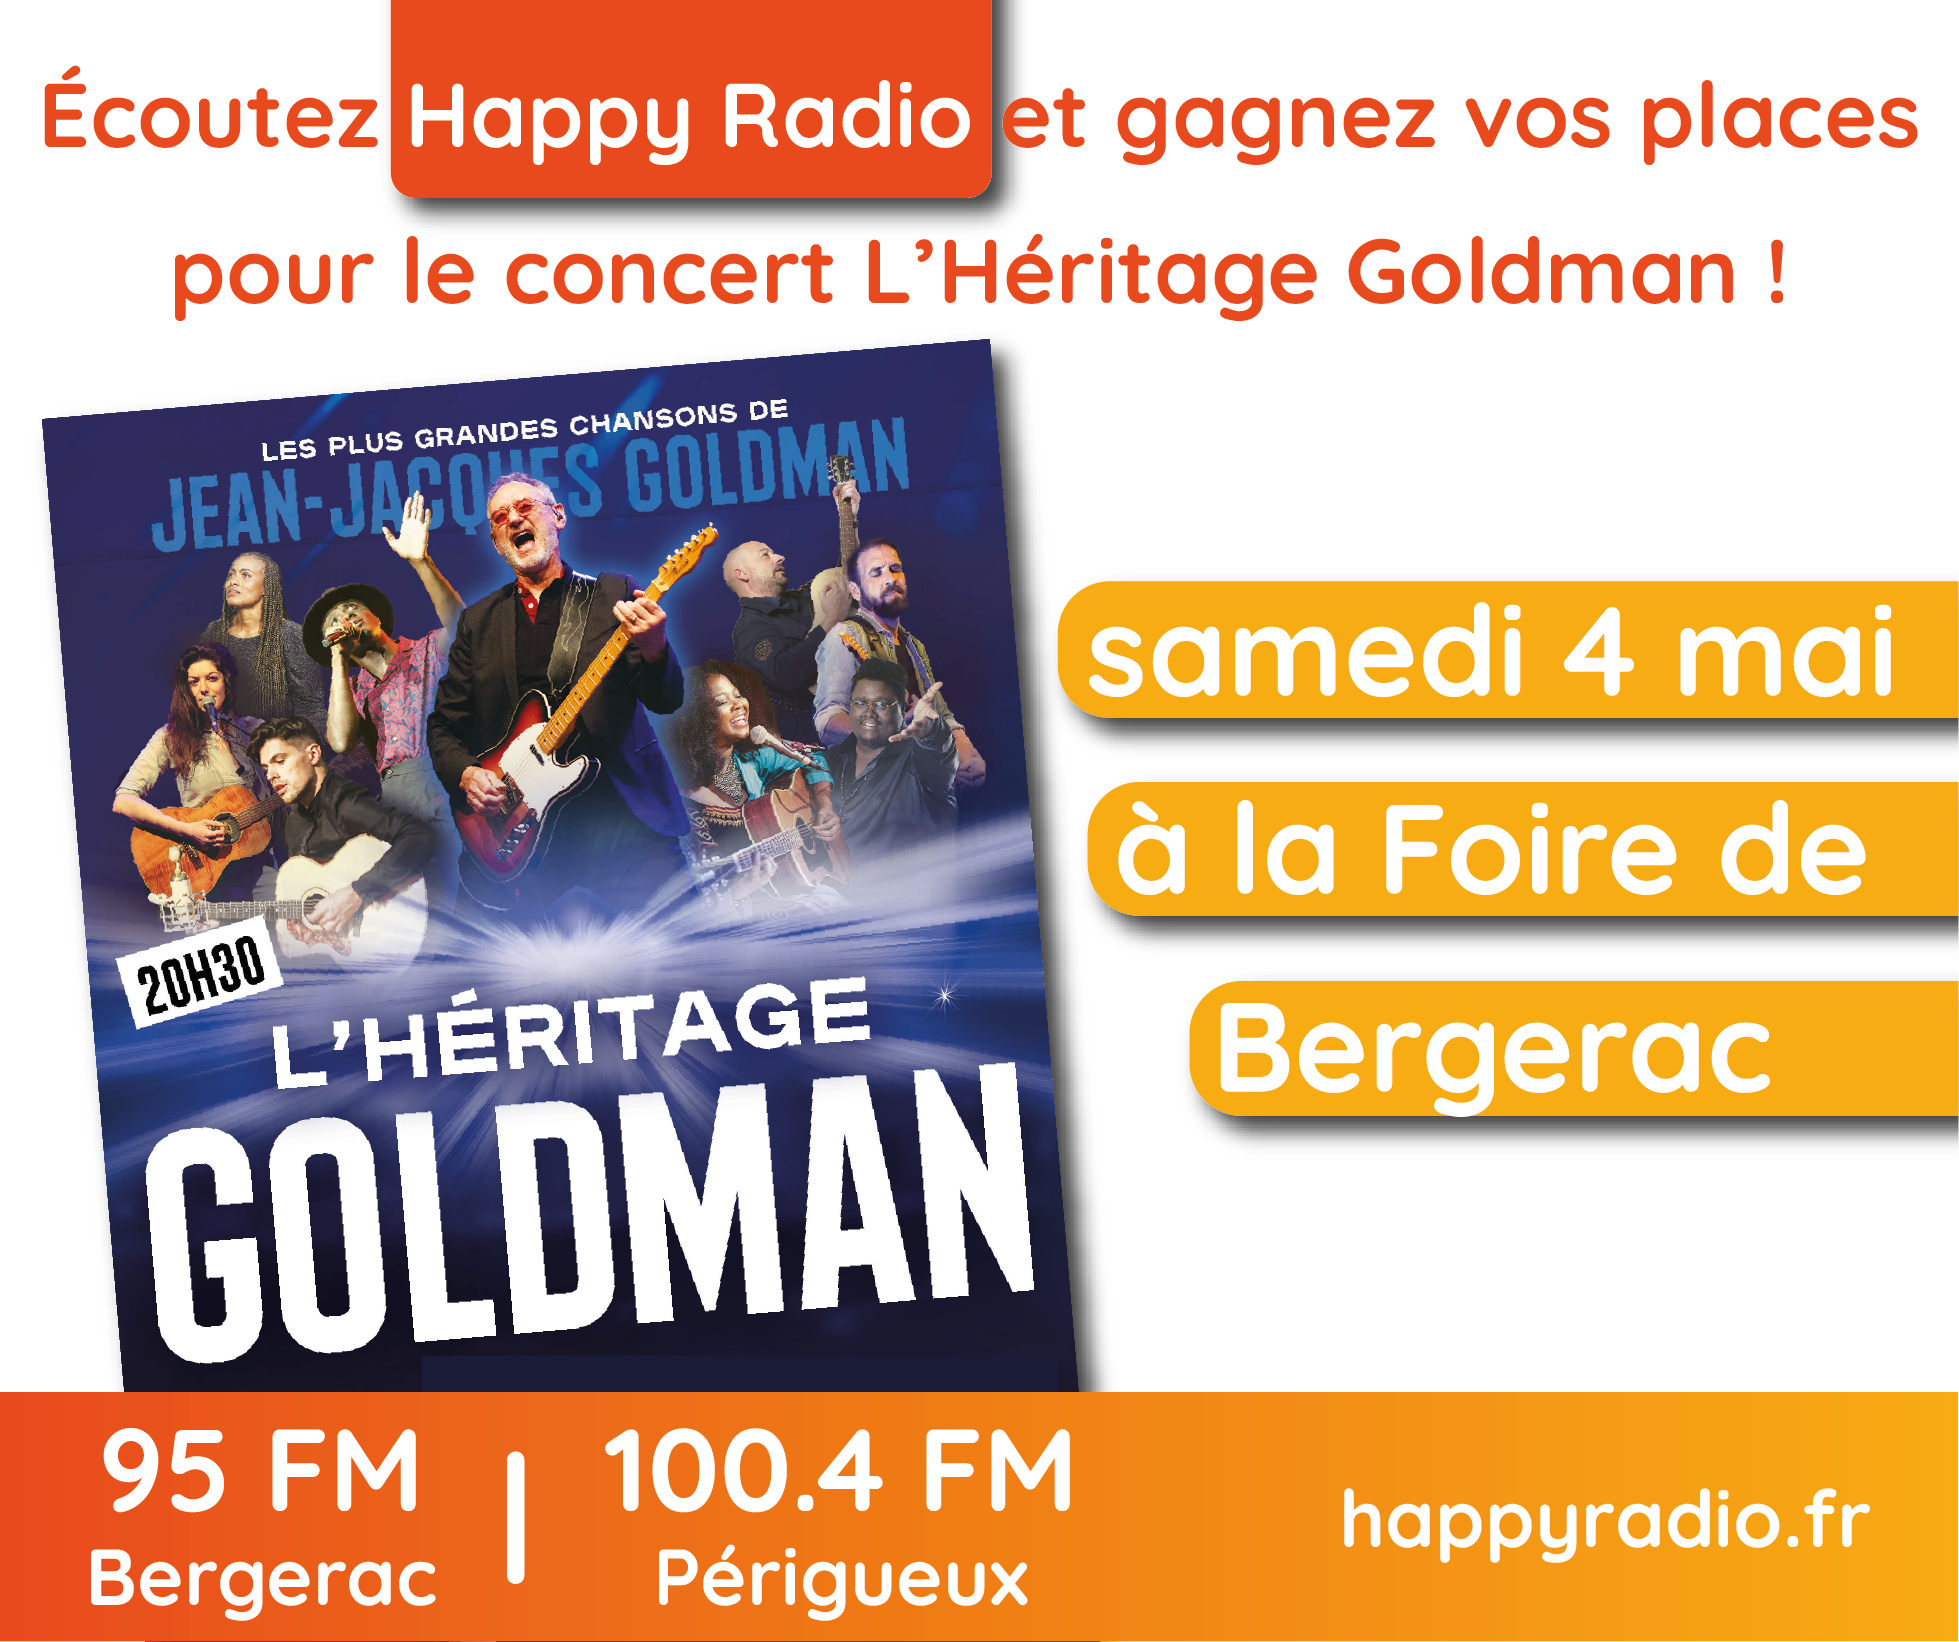 You are currently viewing Écoutez Happy Radio et gagnez vos places de concert pour l’Héritage Goldman